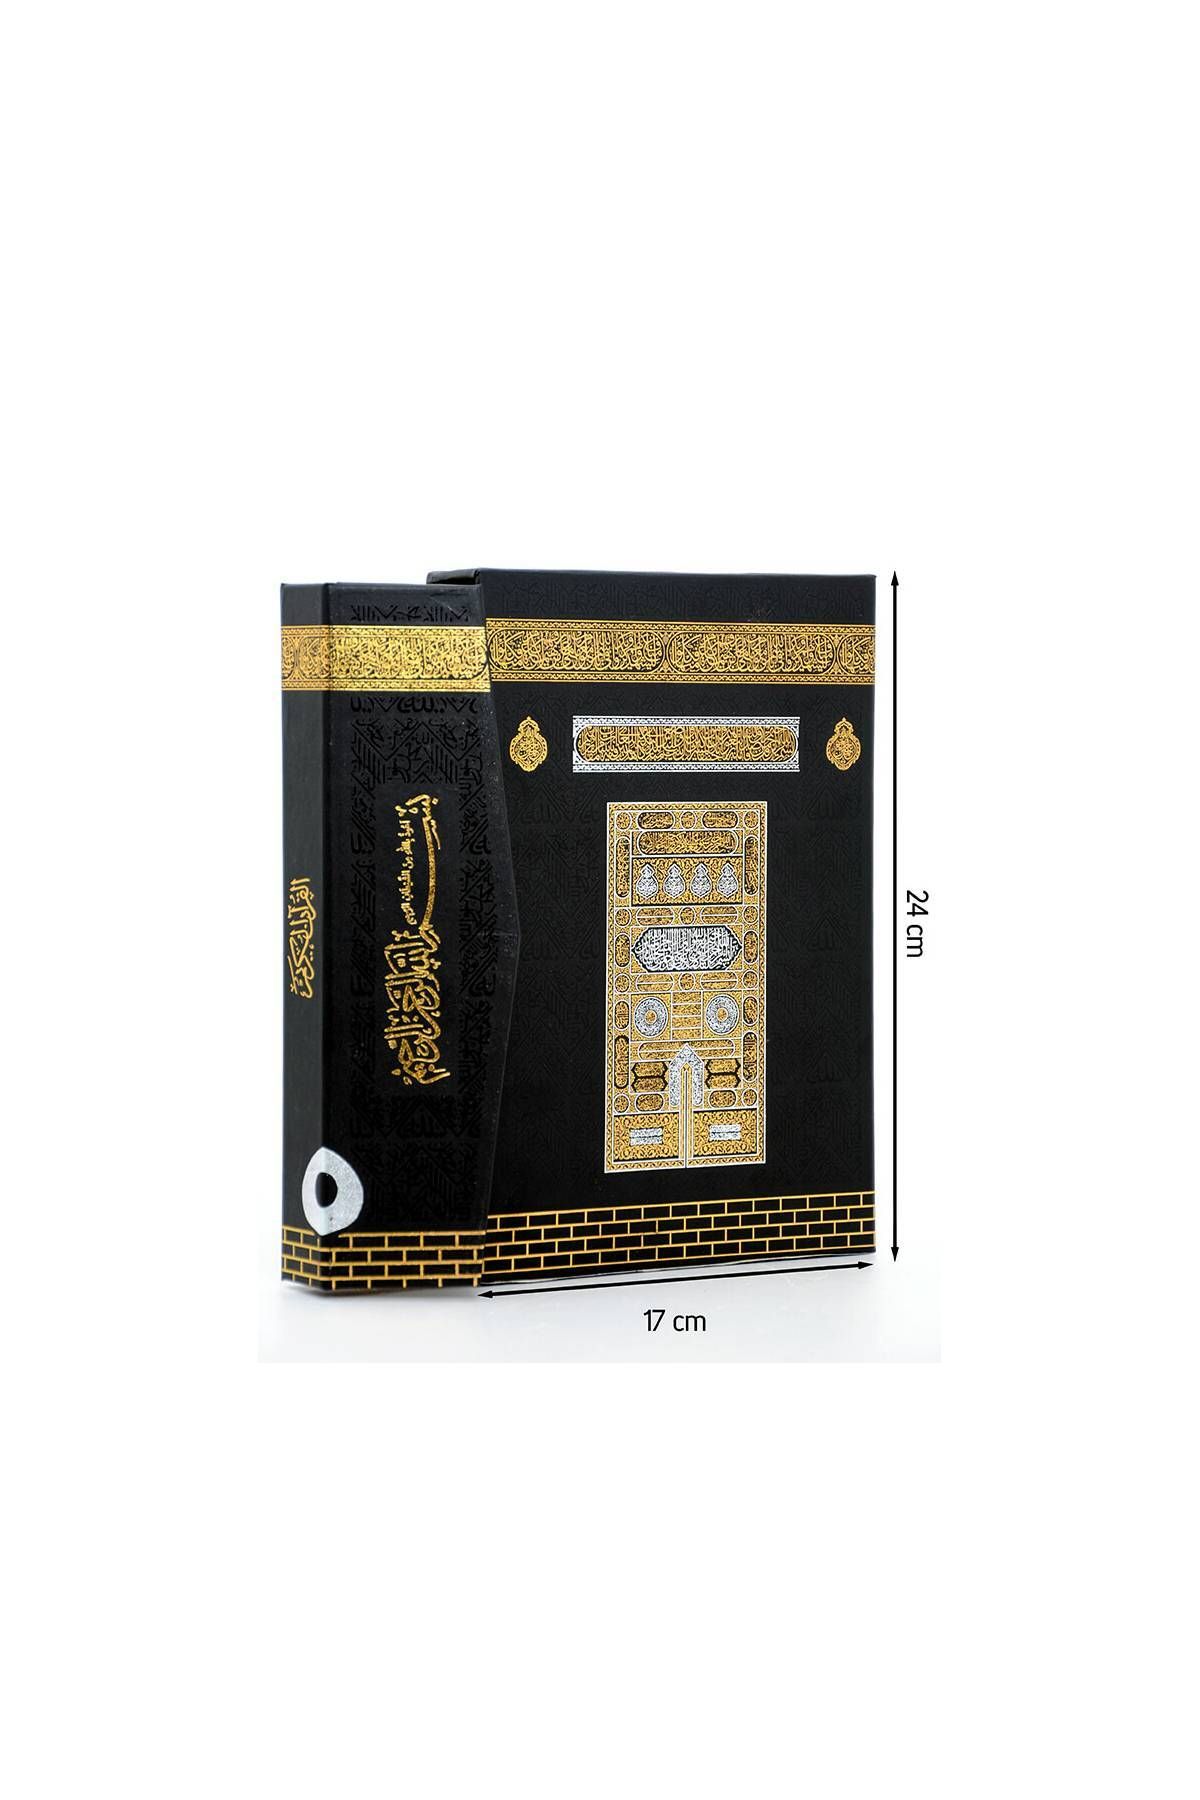 Ayfa Publications Коран с рисунком Каабы — простой арабский язык — среднего размера — с компьютерным названием — в штучной упаковке 9786055256623